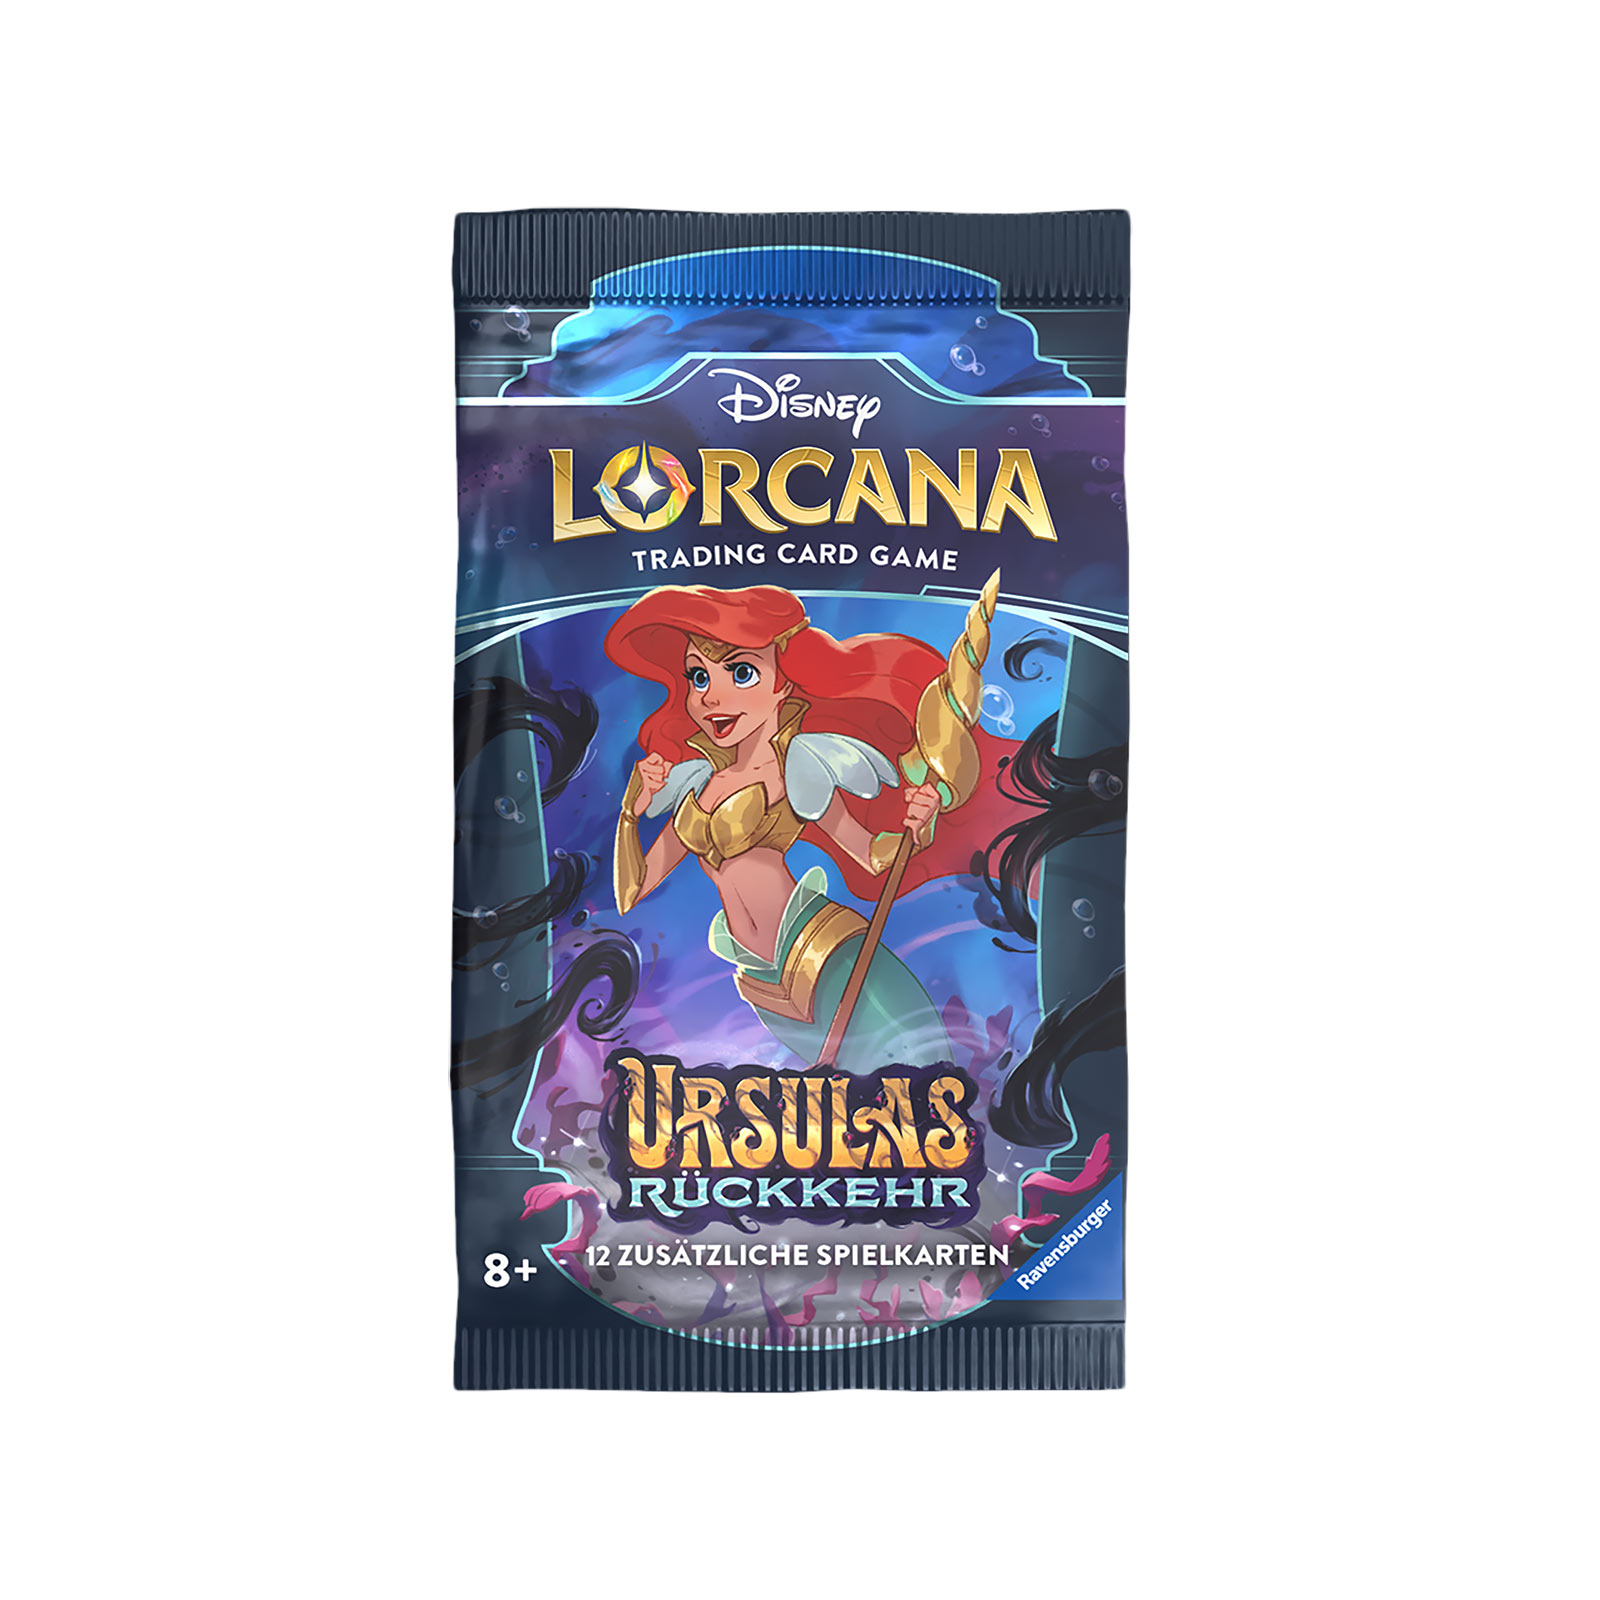 Disney Lorcana Booster - Ursula's Terugkeer Trading Card Game